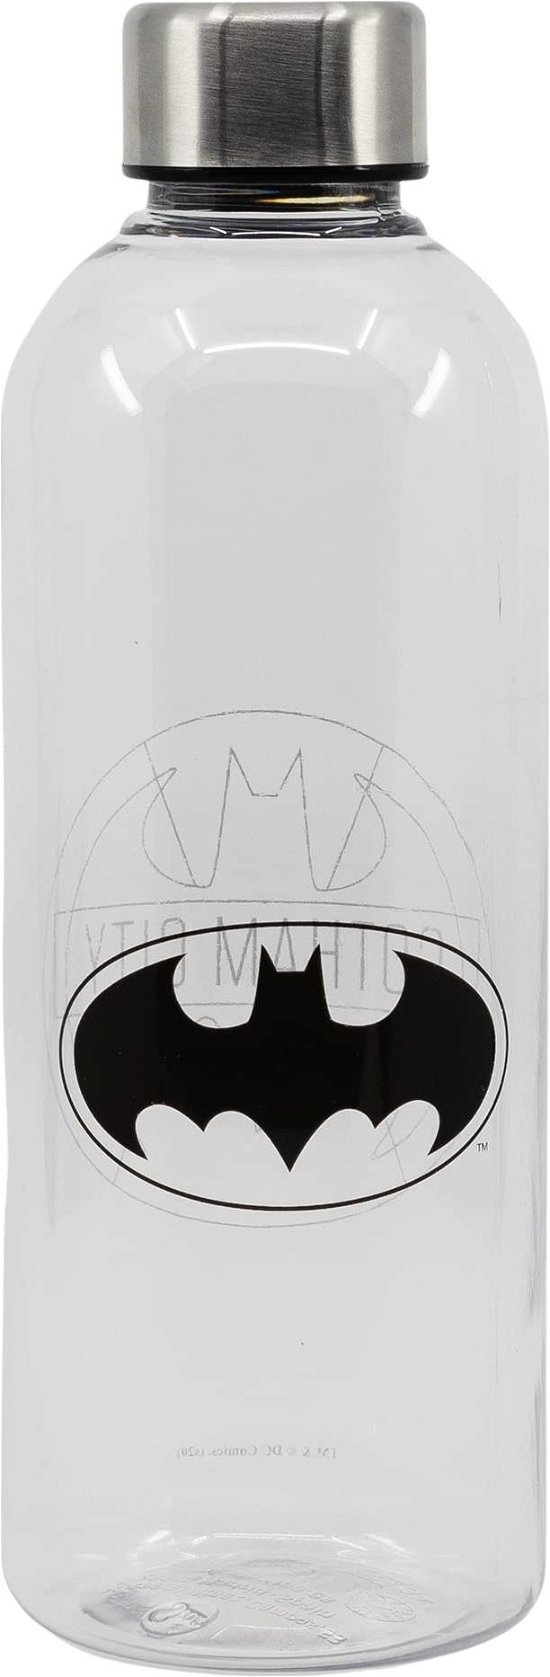 Plastic Bottle - Size 850ml - Batman - Fanituote -  - 8412497855650 - 